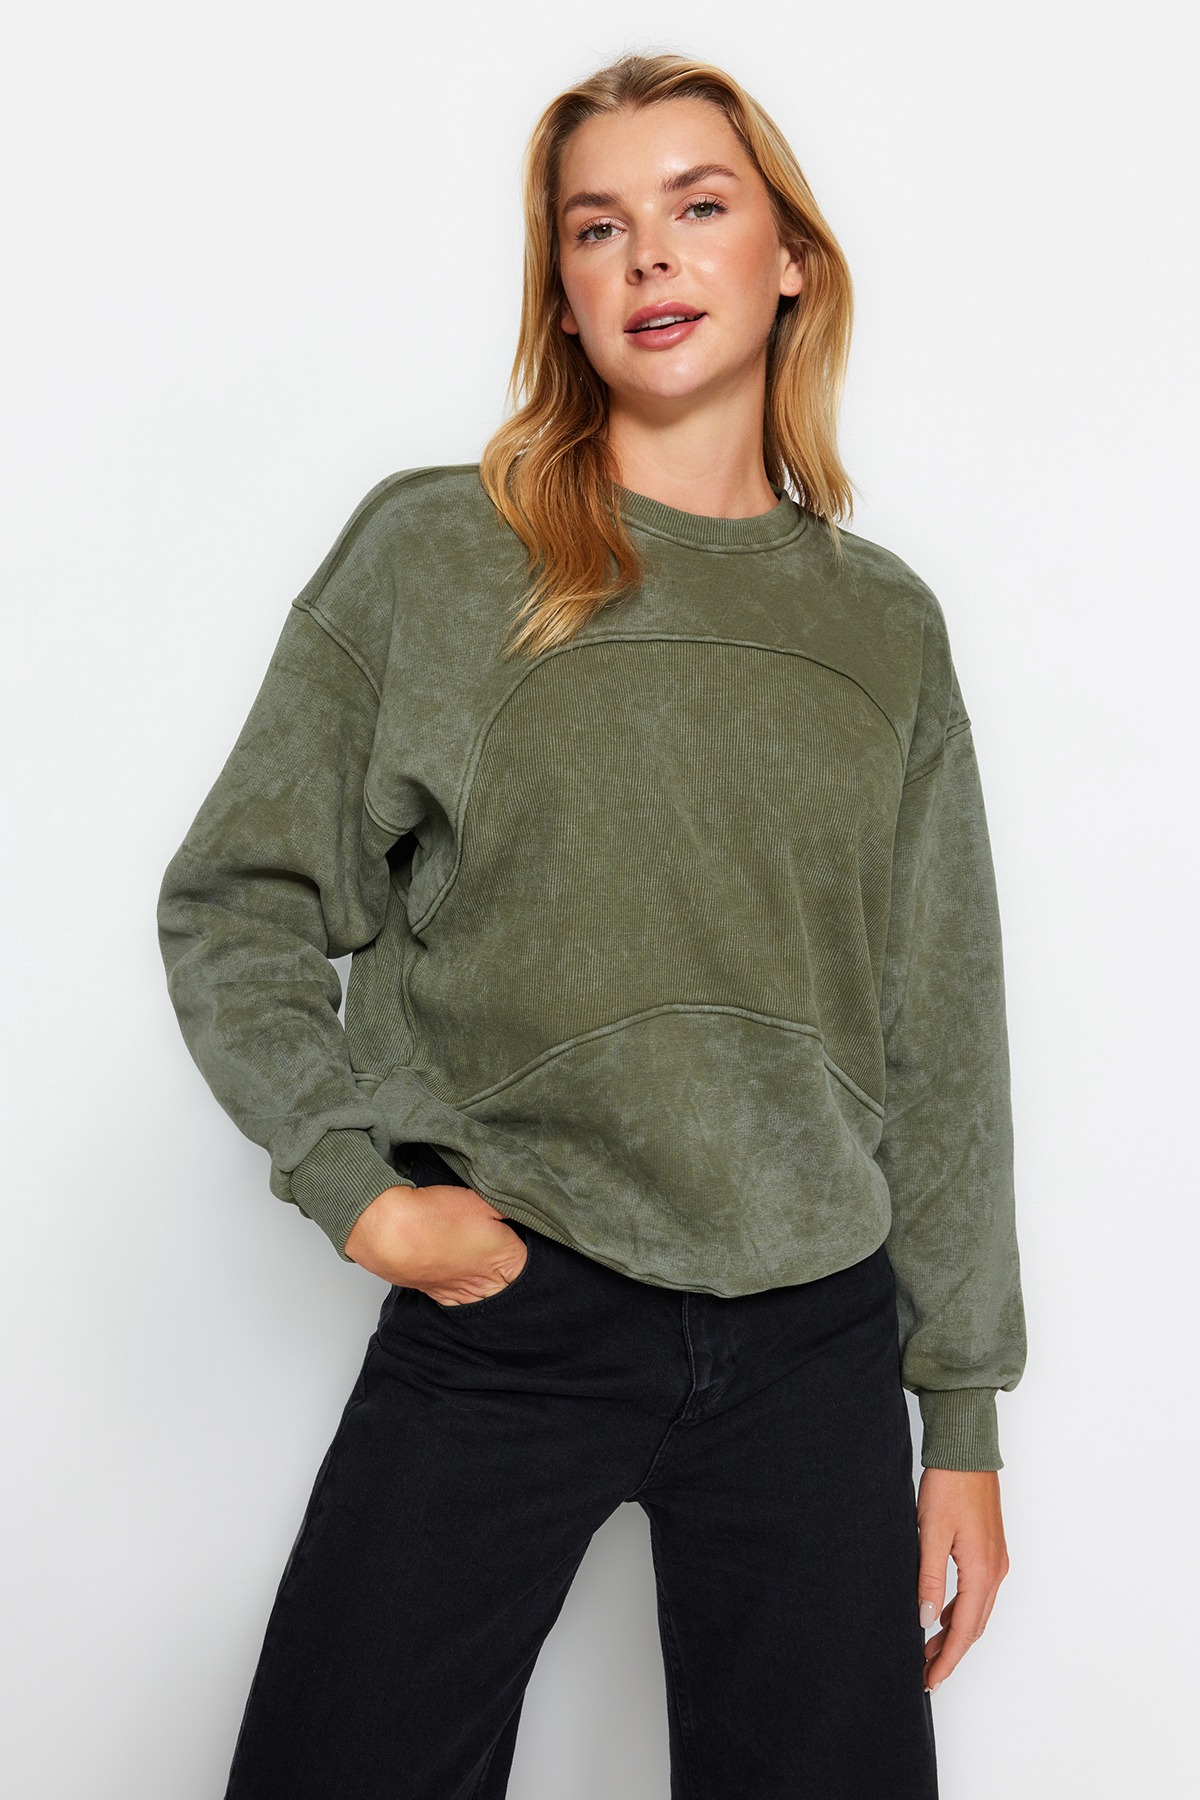 Trendyol Khaki Worn/Faded Effect Fleece Inside Oversize/Cross-Fit Knitted Sweatshirt